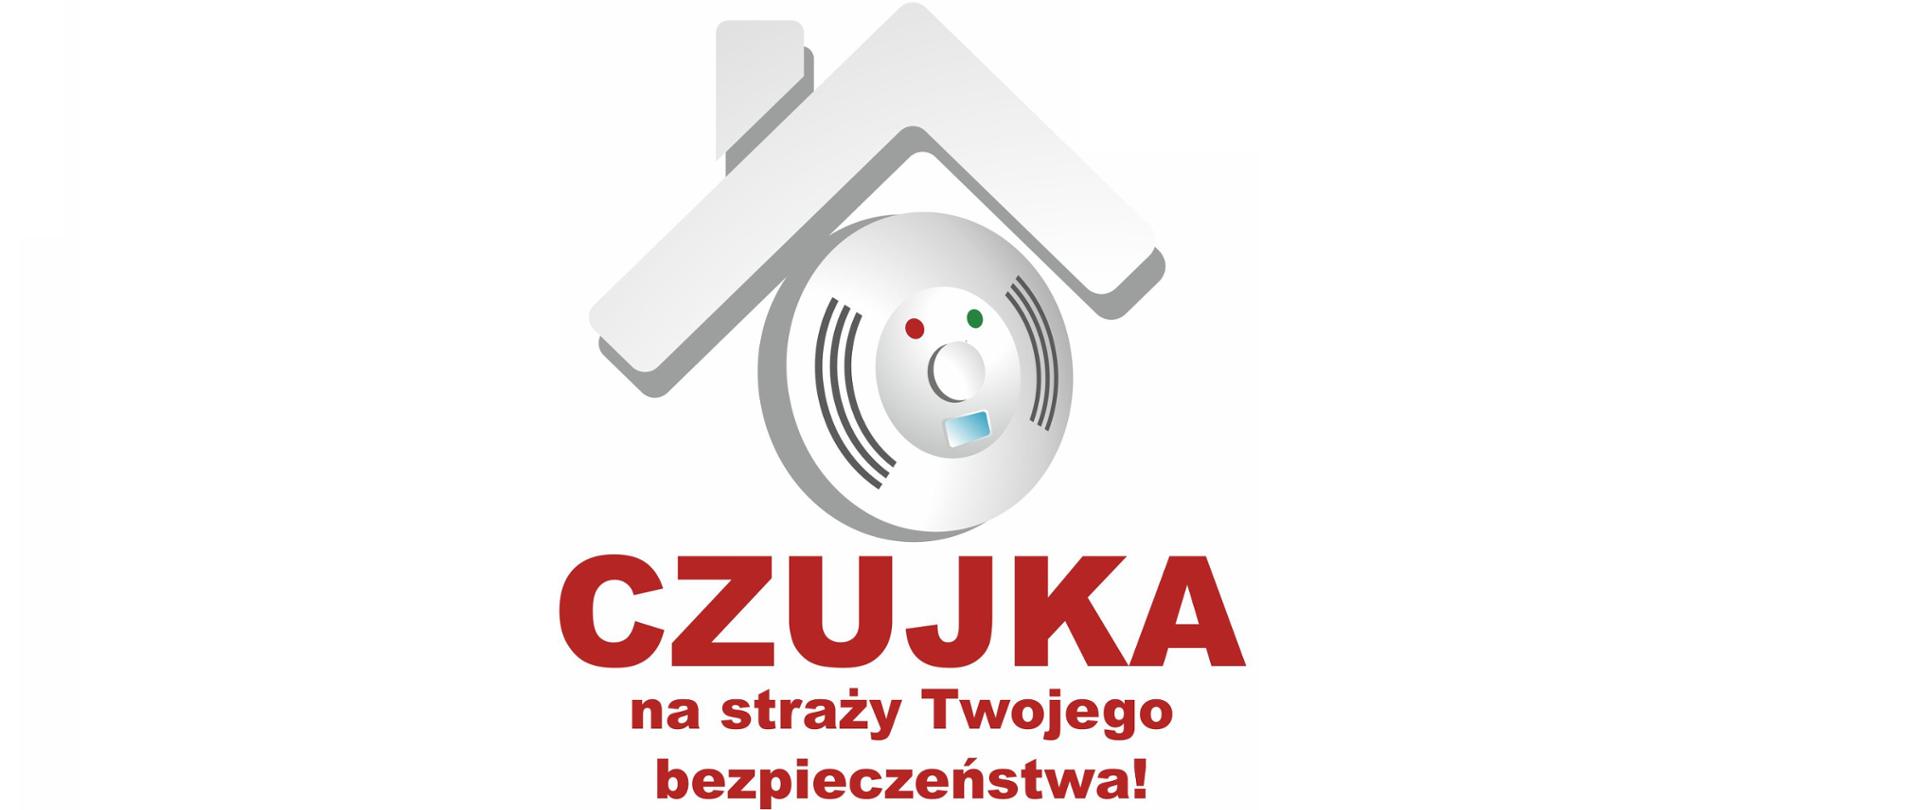 Logo ogólnopolskiej kampanii edukacyjno-informacyjnej Państwowej Straży Pożarnej "Czujka na straży Twojego bezpieczeństwa"